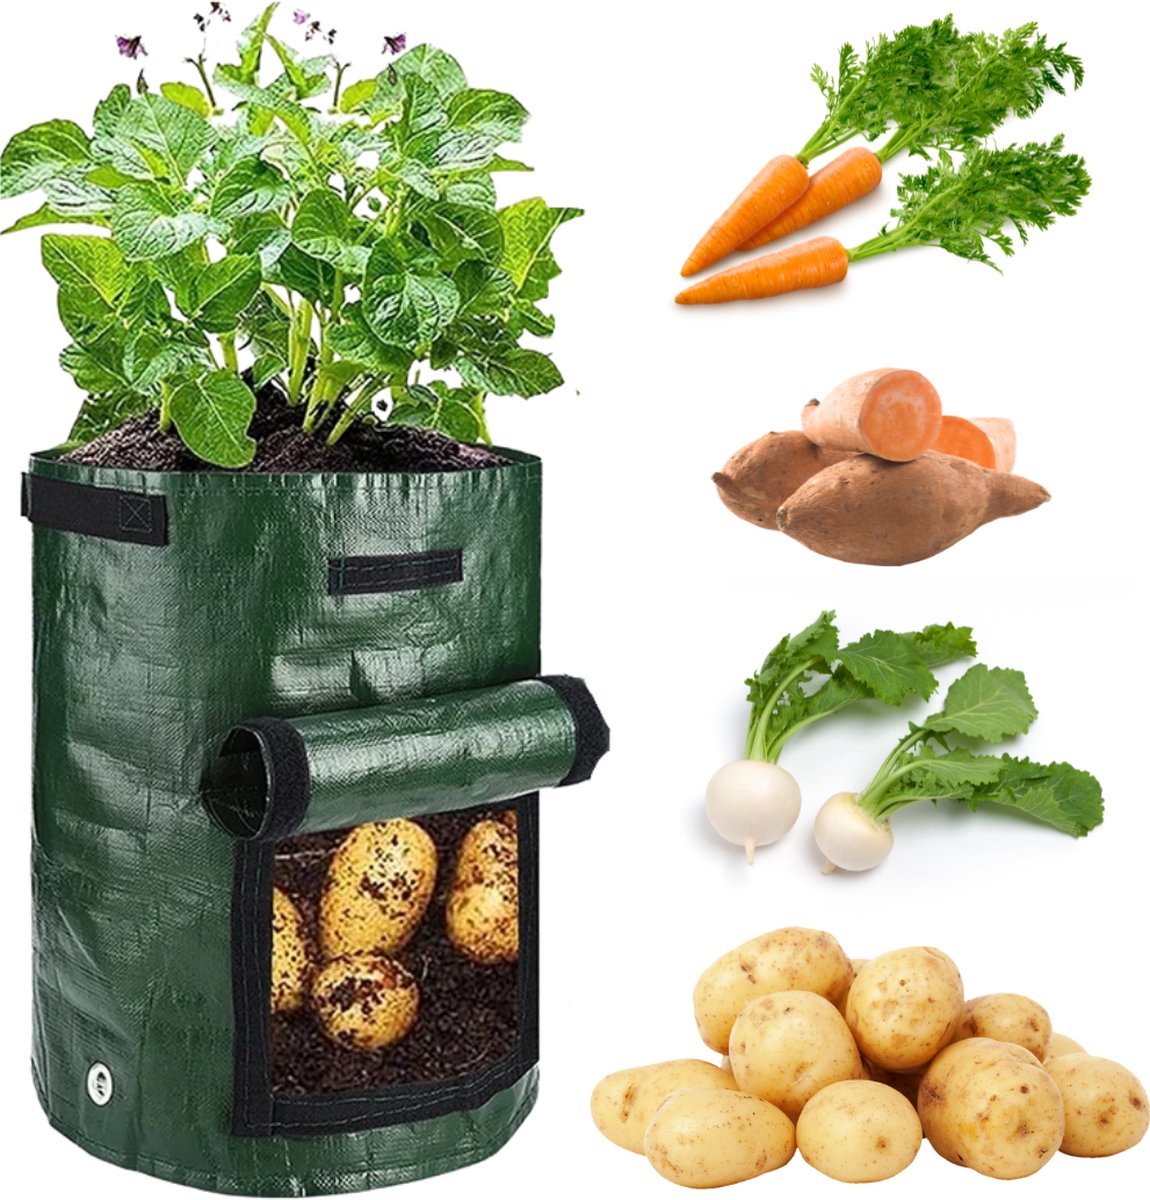 Winkrs Kweekzak Growbag Grow Bag voor aardappelen , groenten en planten - Tuinzak/Groeizak - Small 30x35CM